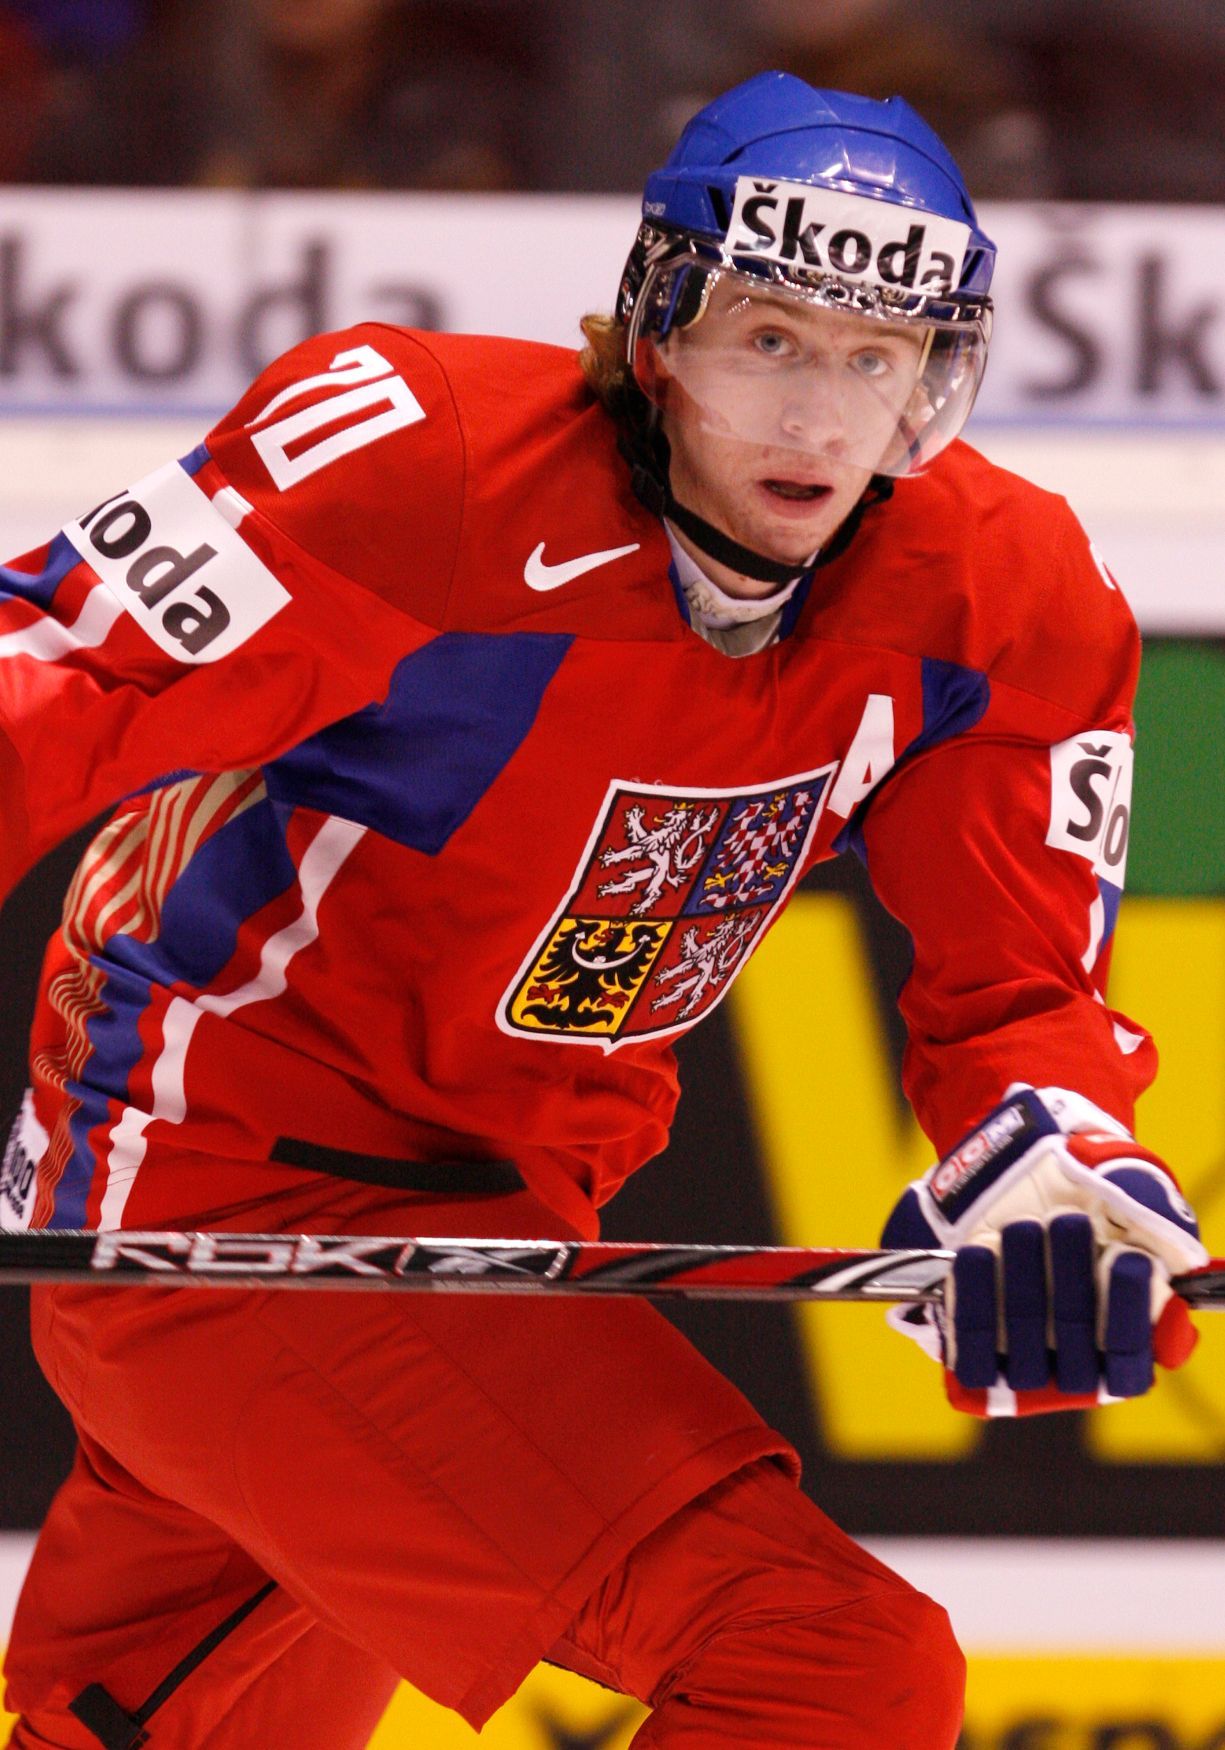 Český hokejový útočník Jakub Voráček na MS juniorů 2008